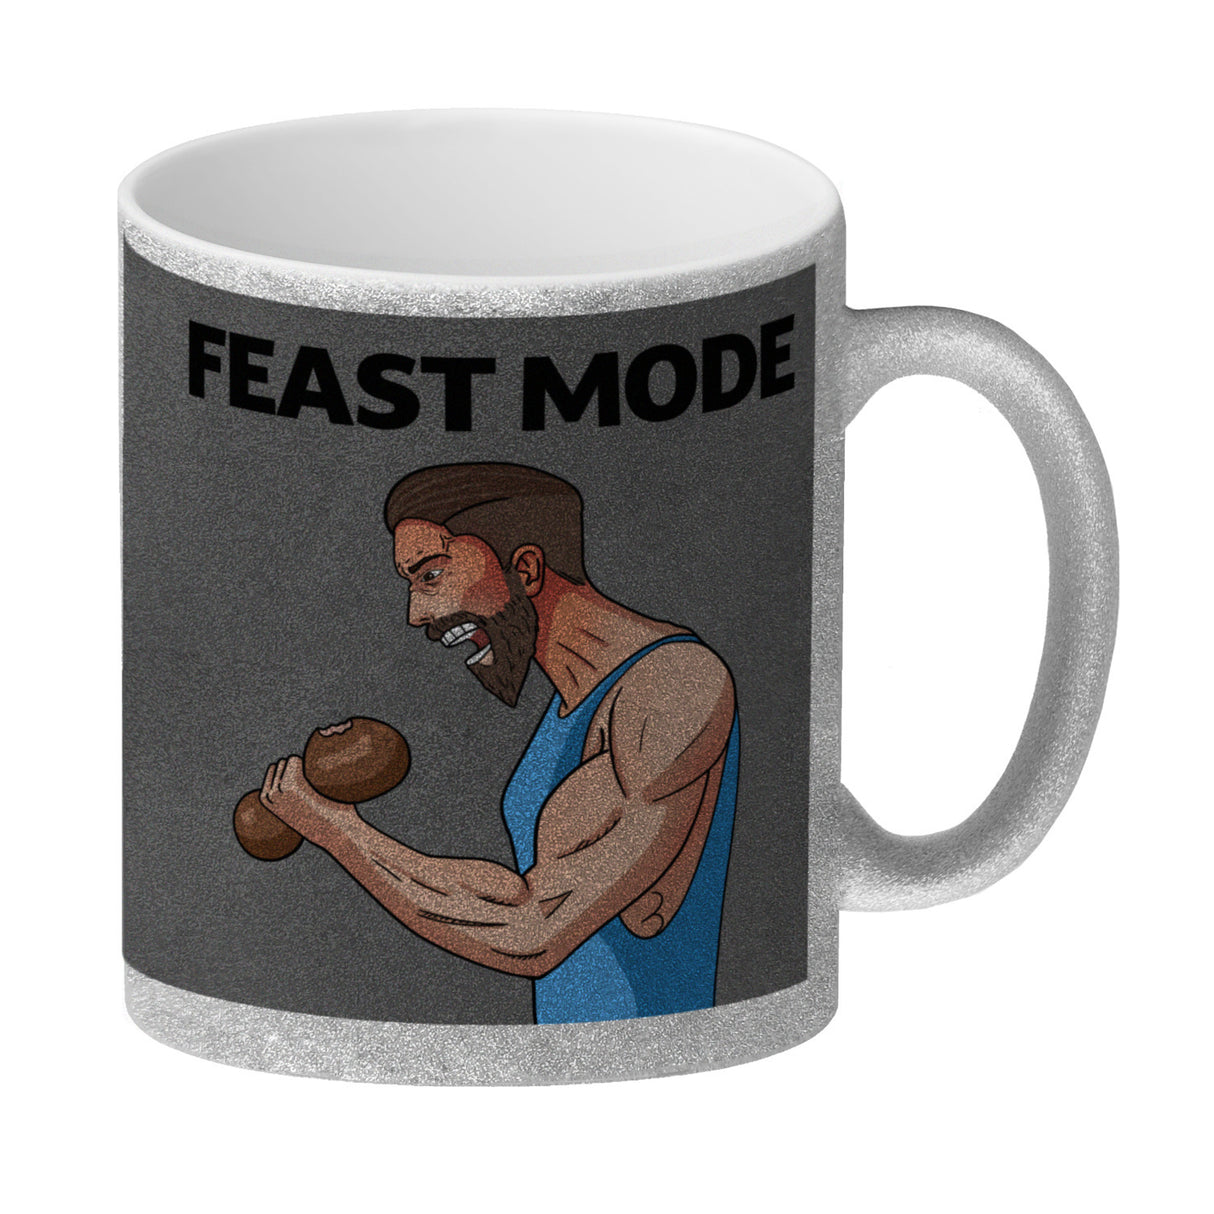 Feast Mode Kaffeebecher mit Bodybuilder Motiv